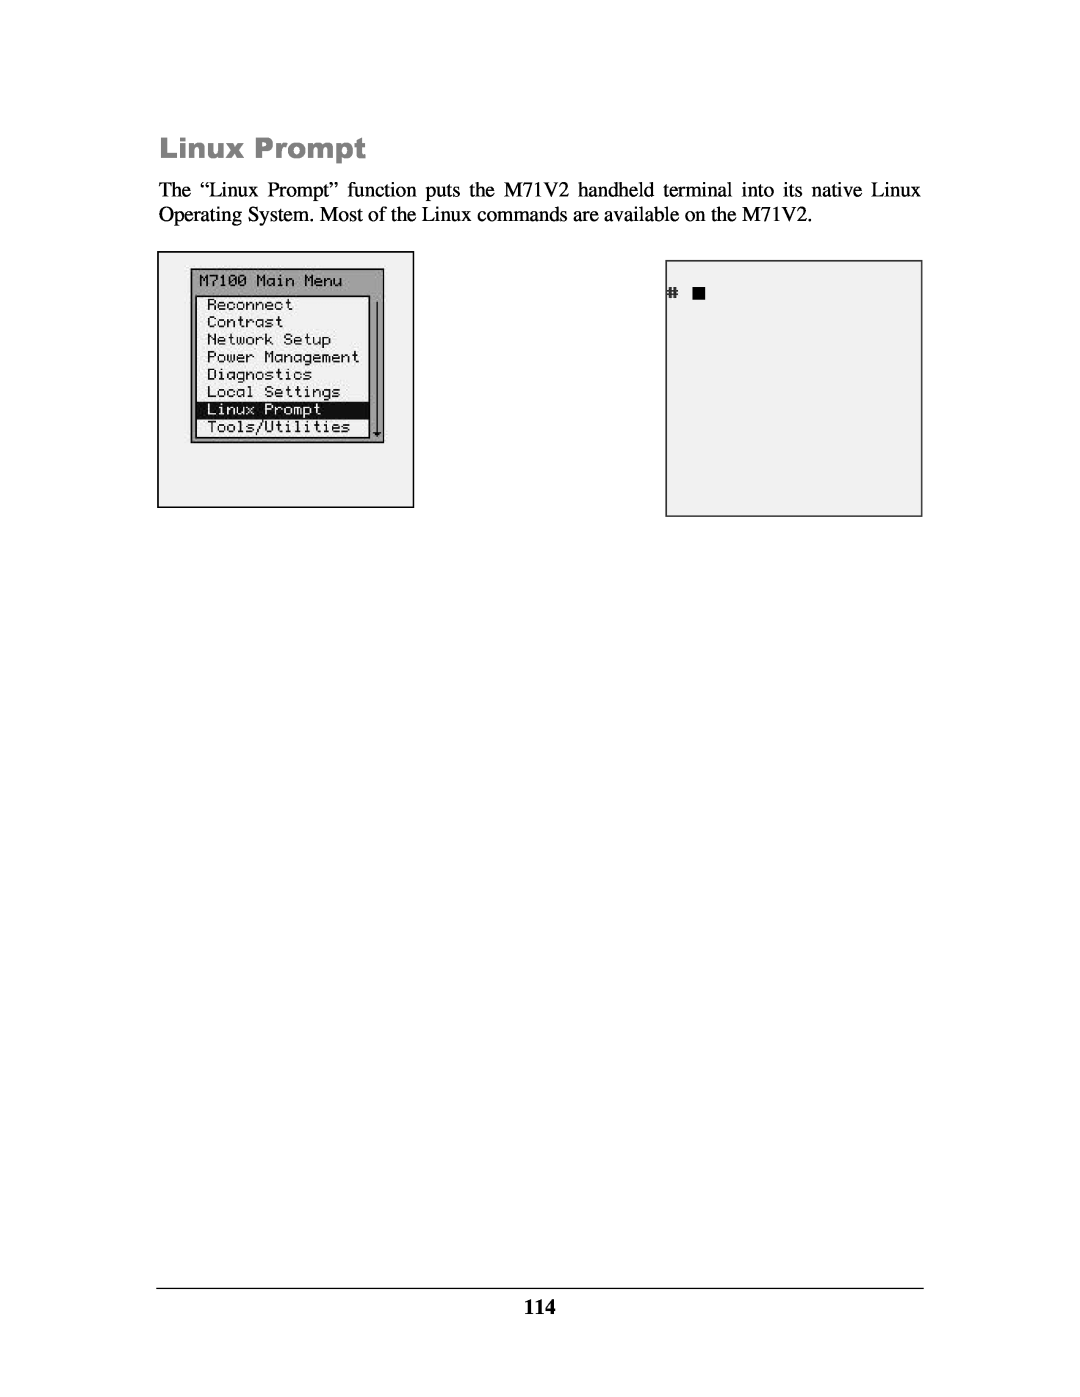 IBM M71V2 manual Linux Prompt 